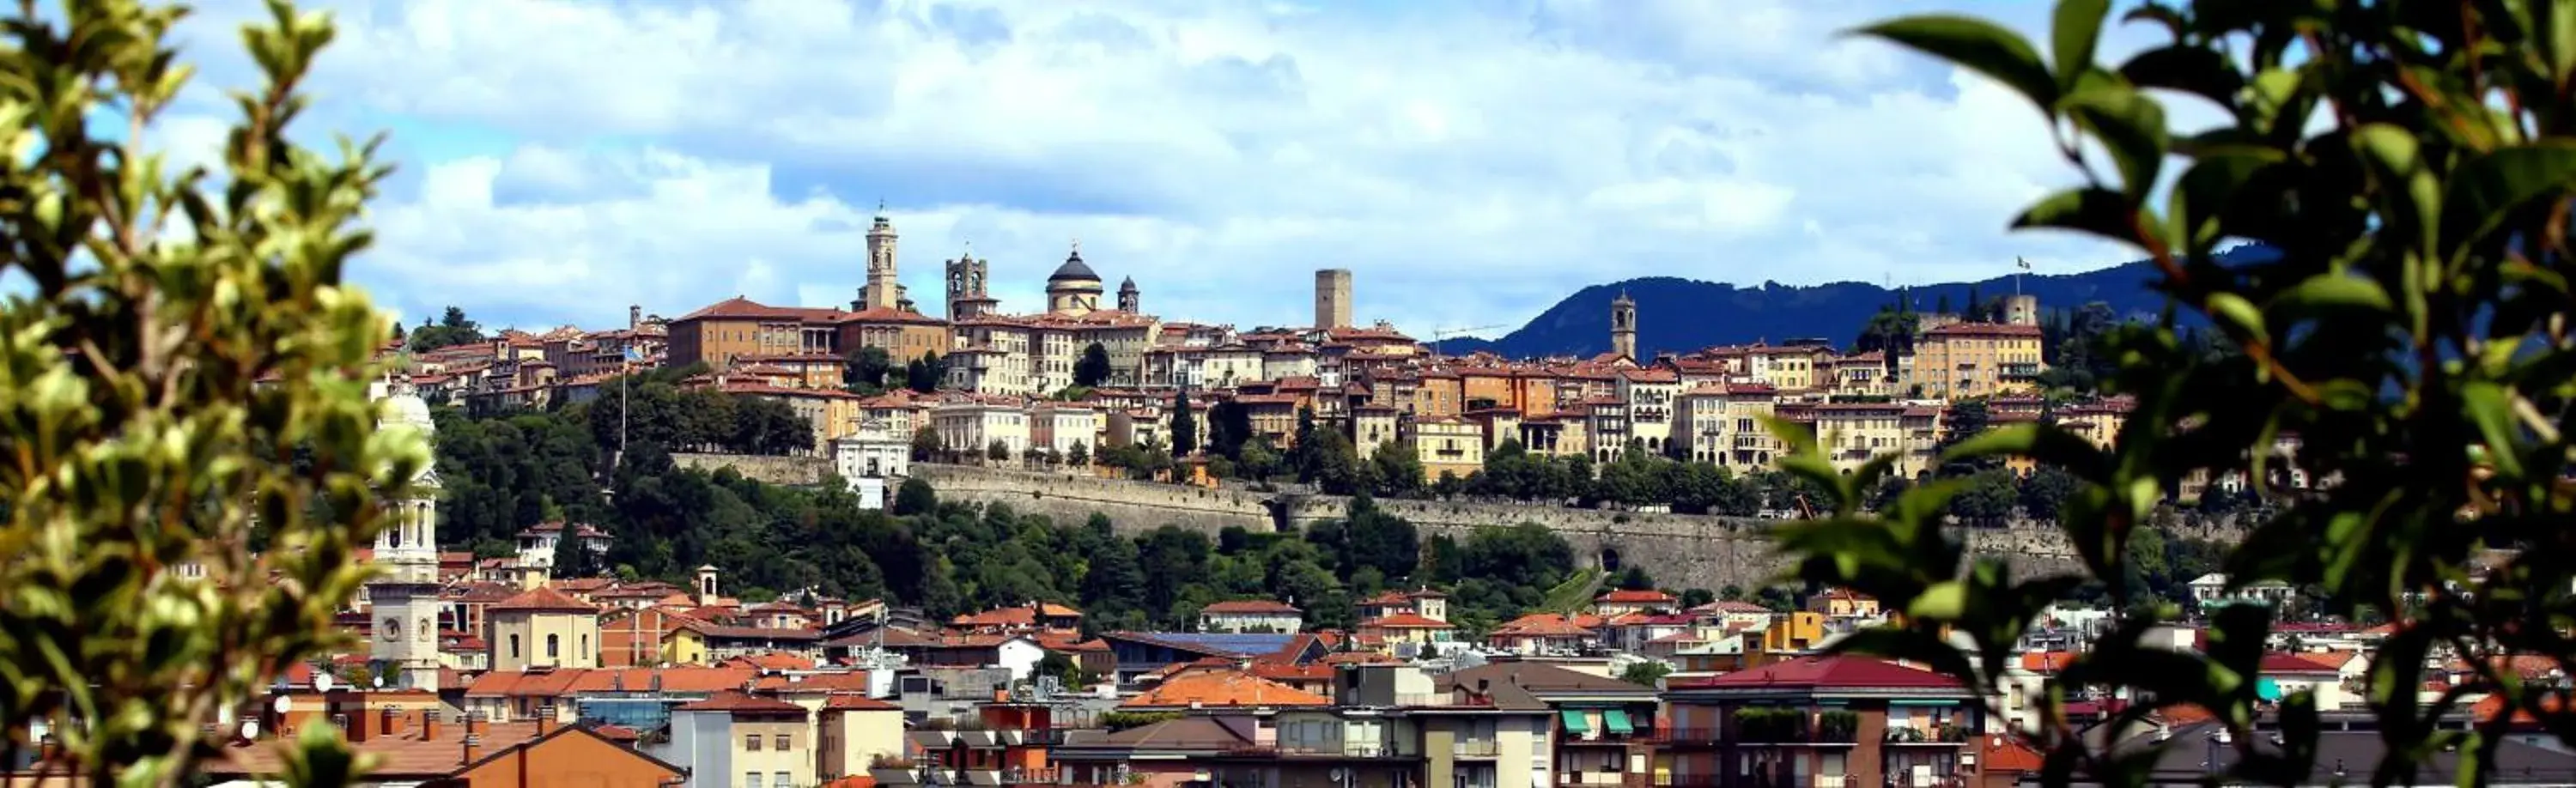 City view in Hotel Città Dei Mille